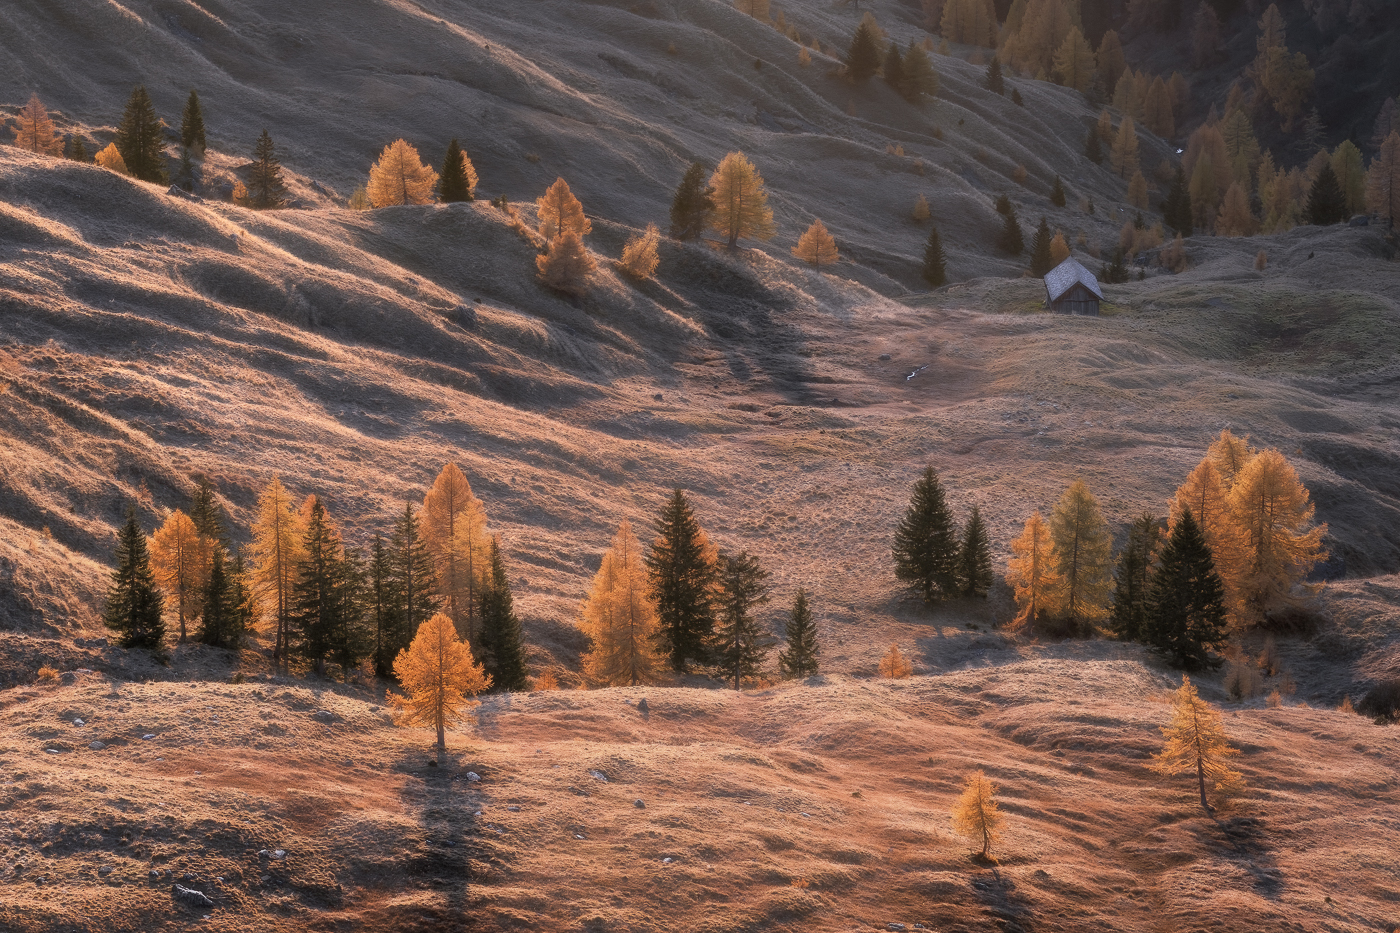 L’alba dorata dell’autunno accende i pascoli, risaltando tenaci larici e abeti isolati nelle praterie d’alta quota. Dolomiti Ampezzane, Italia.